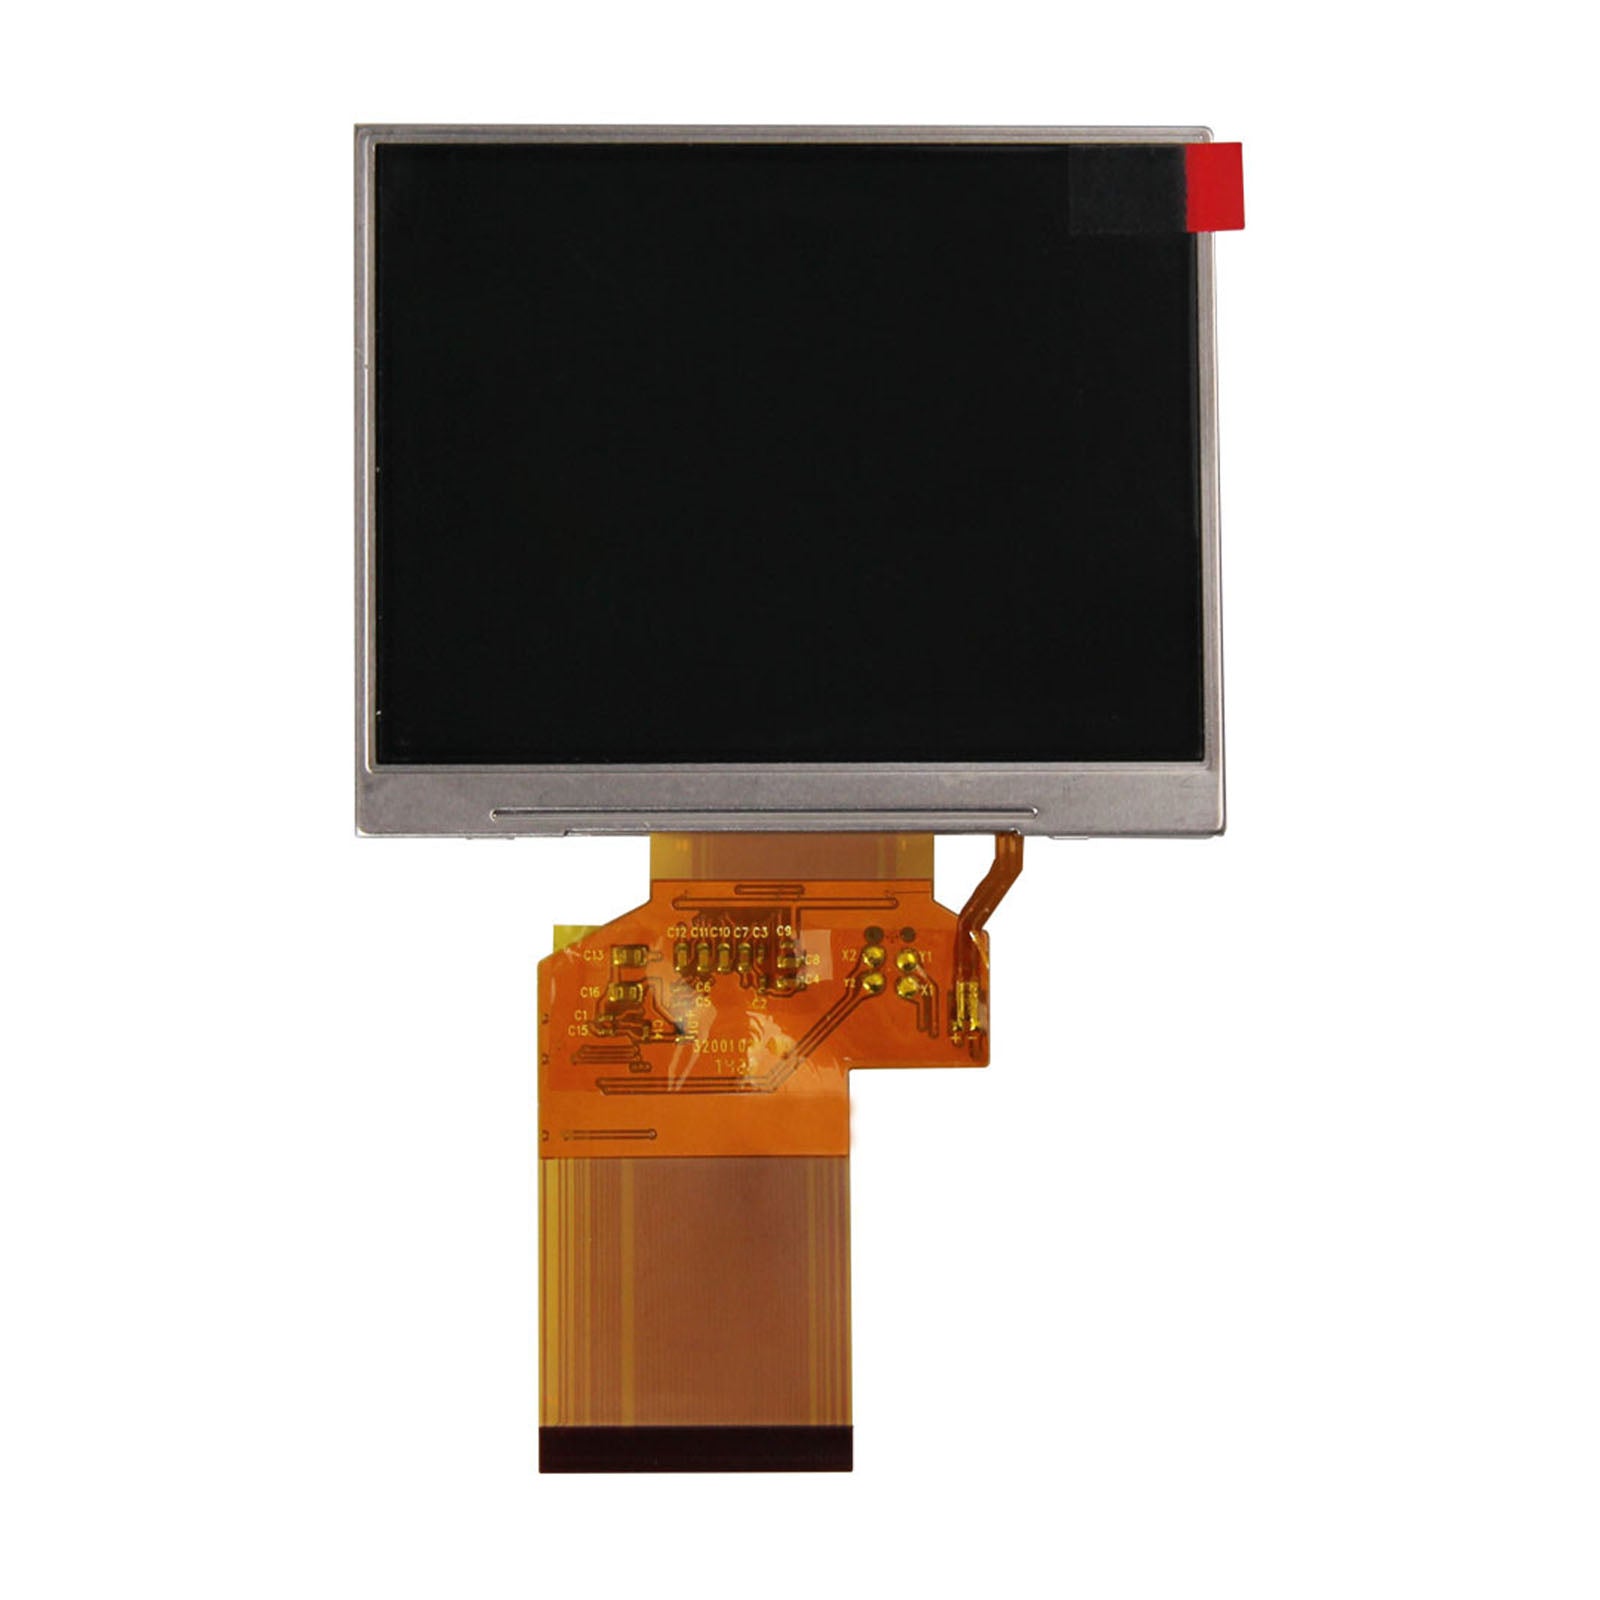 DisplayModule 3.5“ 320x240 TFT LCD Display Panel - RGB